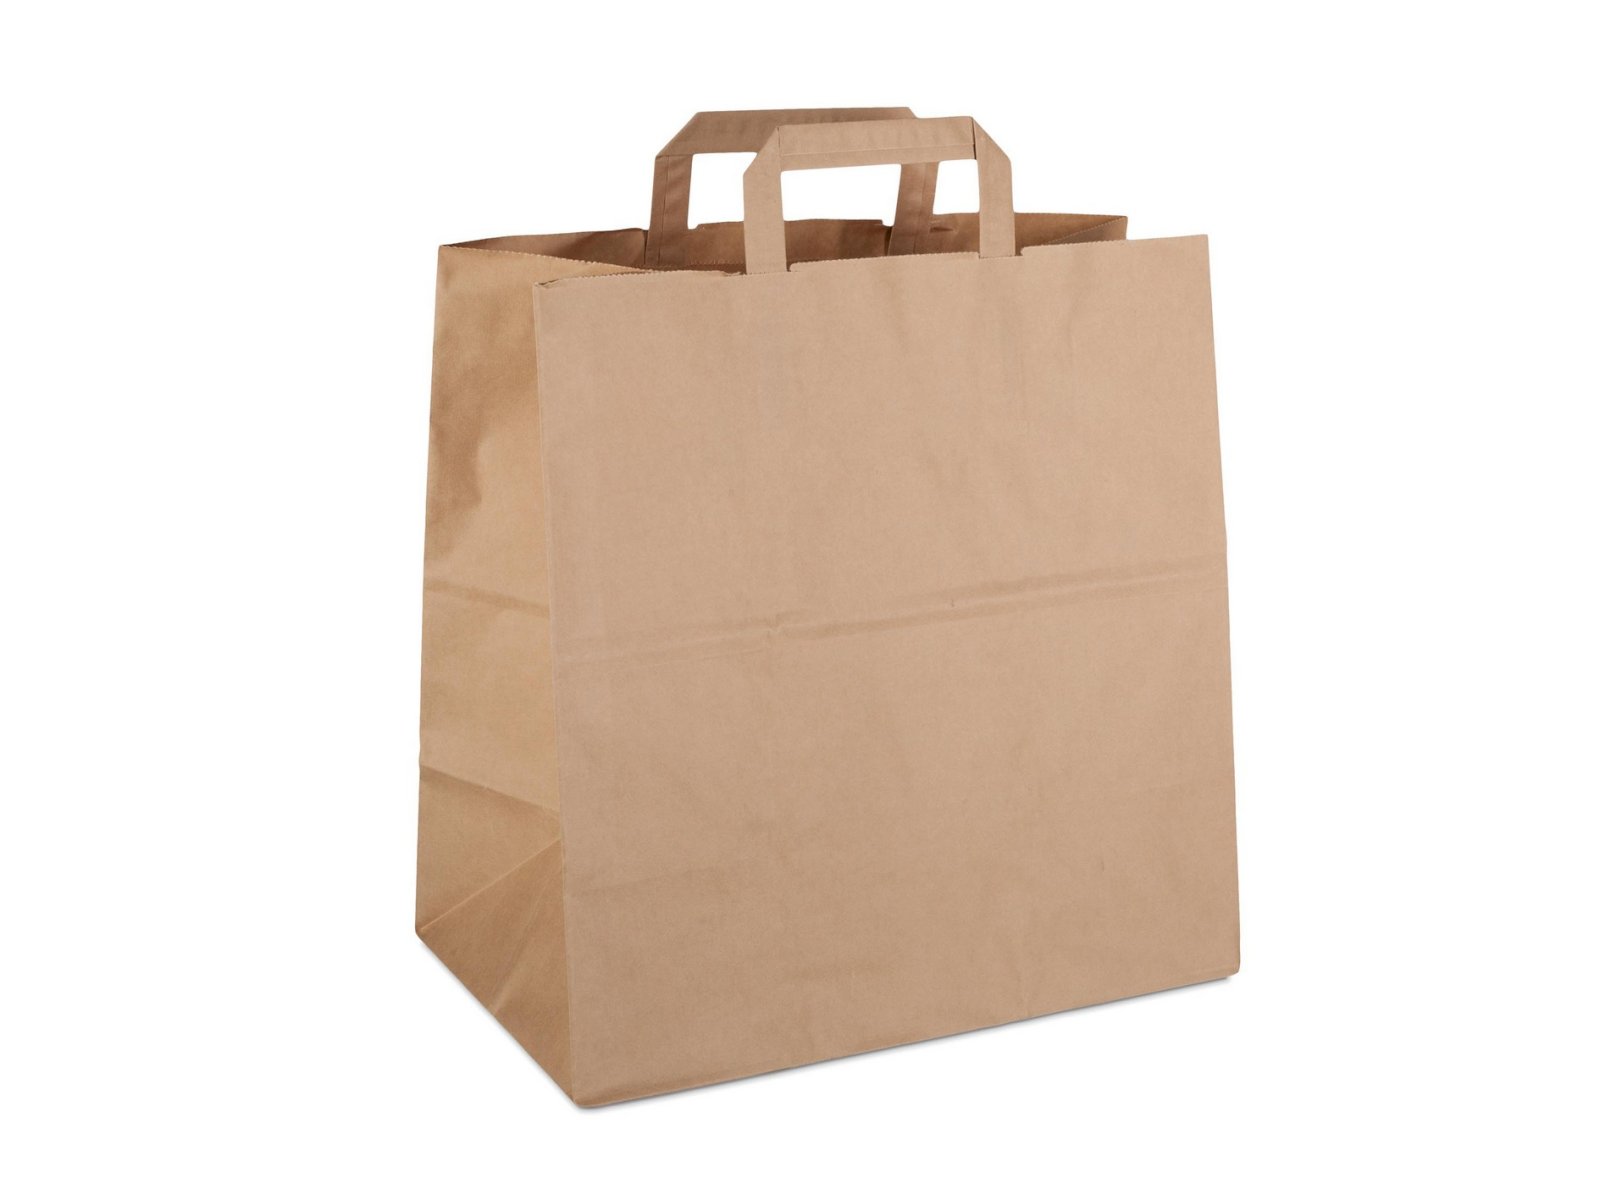 Бумажный крафт пакет-сумка с плоскими ручками отлично подходит для пищевых продуктов и бытовых товаров. Благодаря плотной бумаге 80 г/м2, пакет обладает высокой прочностью и отлично держит форму. Размер пакета 32х32 см, ширина бокового фальца 18 см. В упаковке 200 штук.